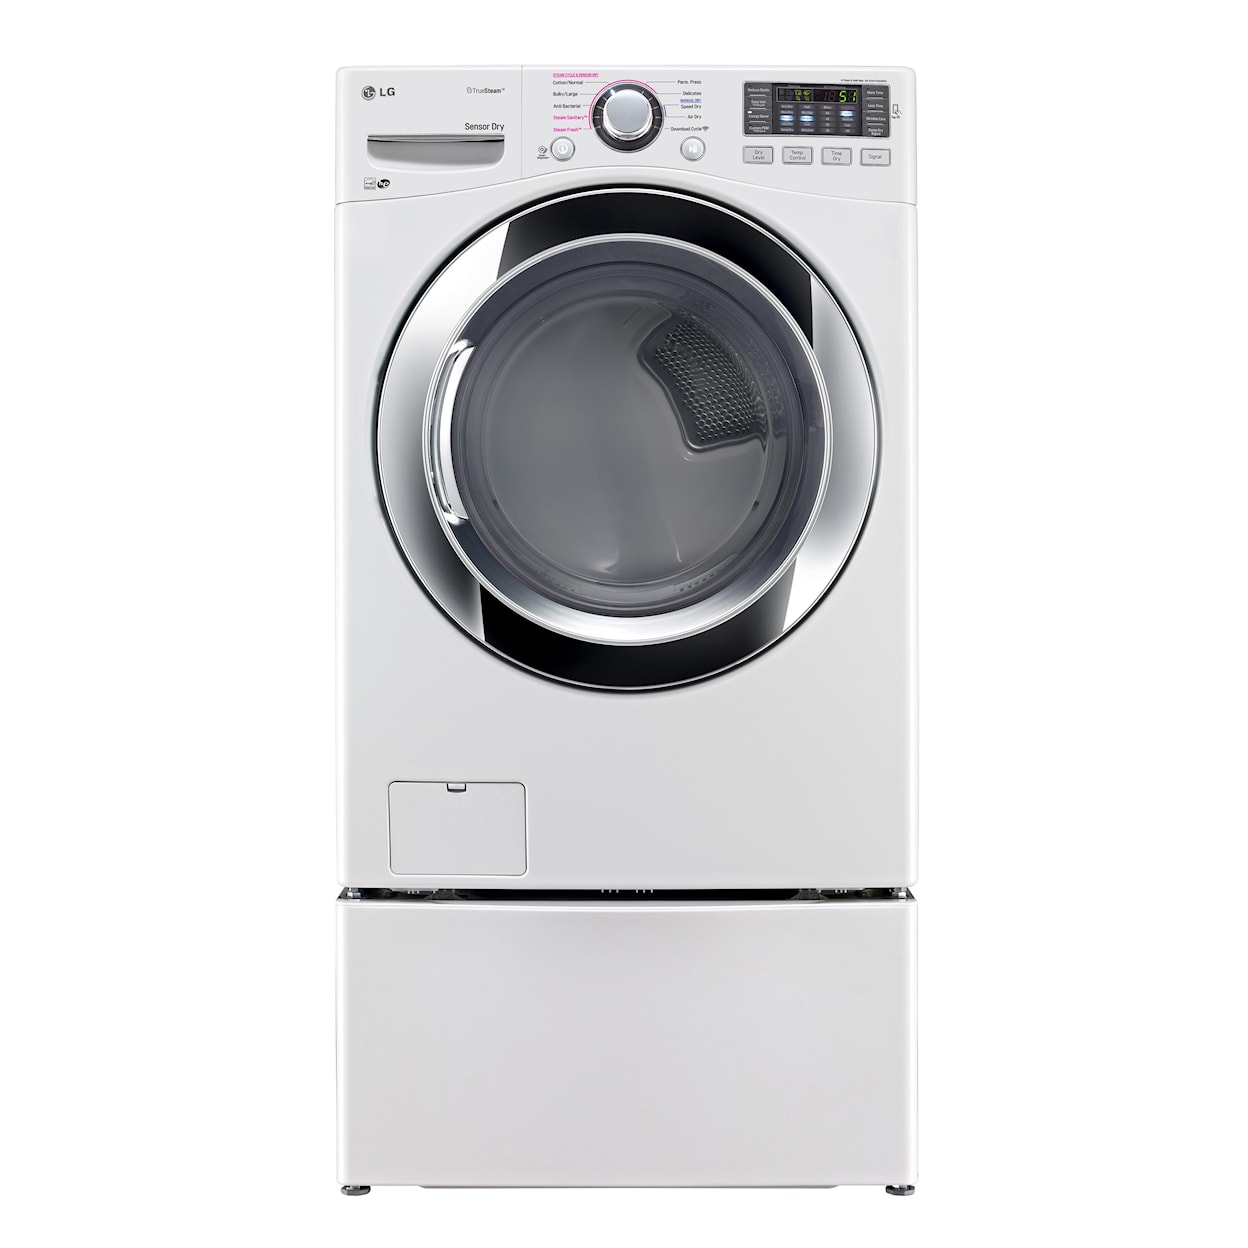 LG Appliances Dryers 7.4 cu. ft. Front Load Gas Dryer